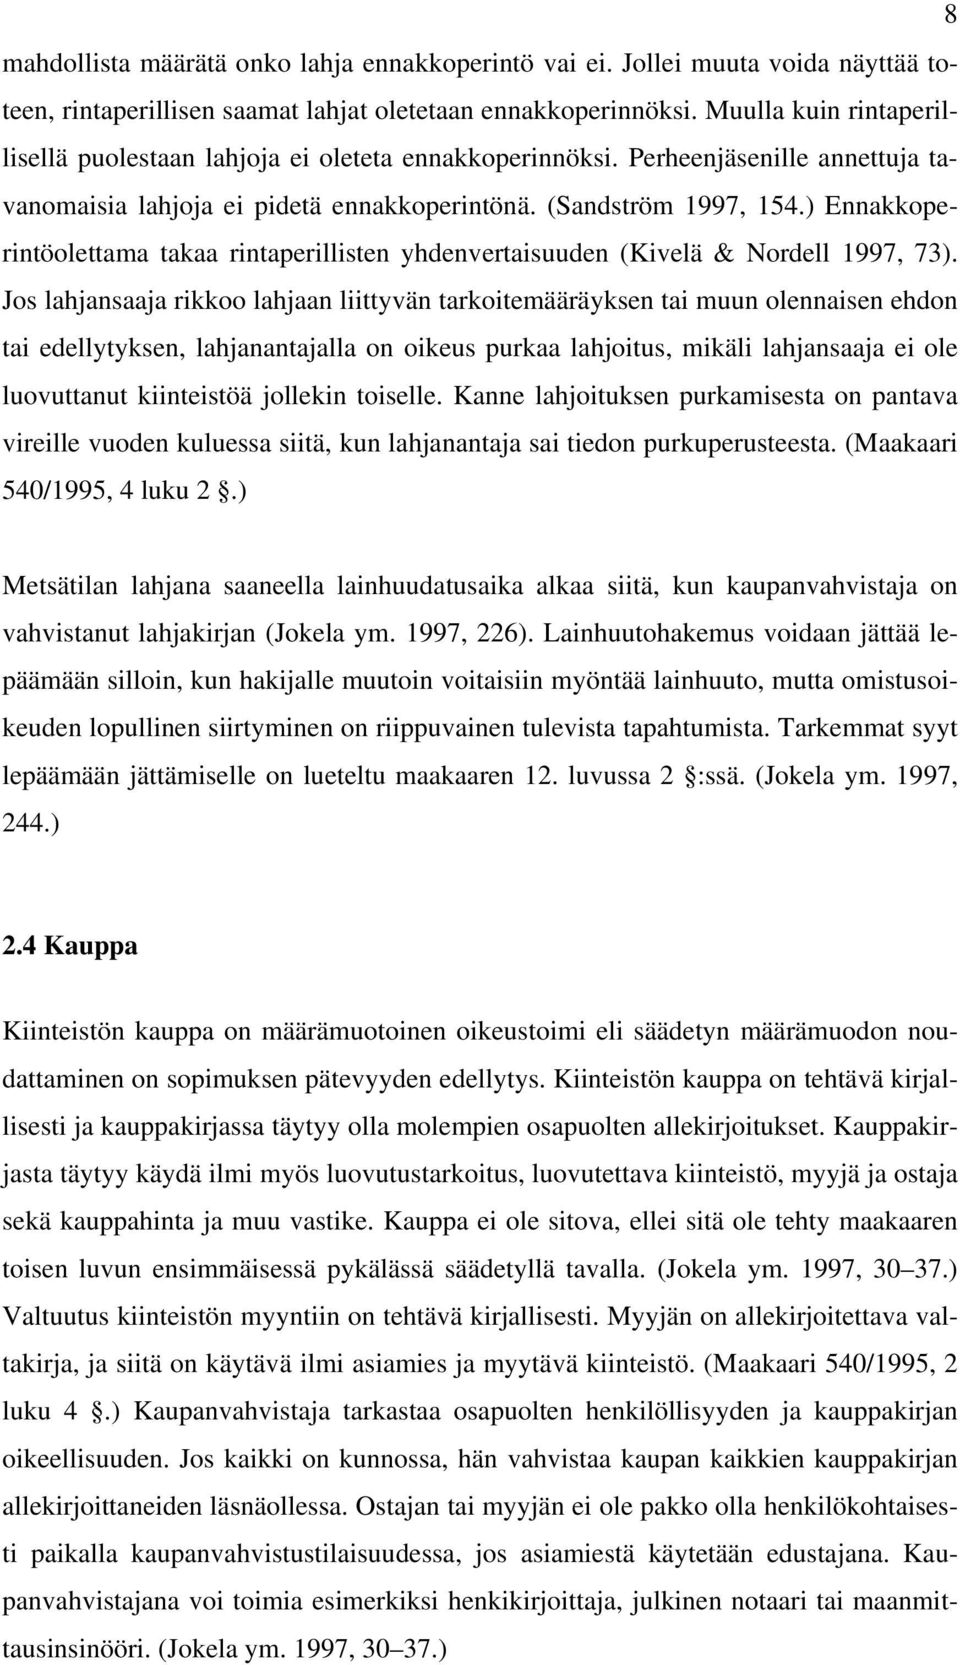 ) Ennakkoperintöolettama takaa rintaperillisten yhdenvertaisuuden (Kivelä & Nordell 1997, 73).